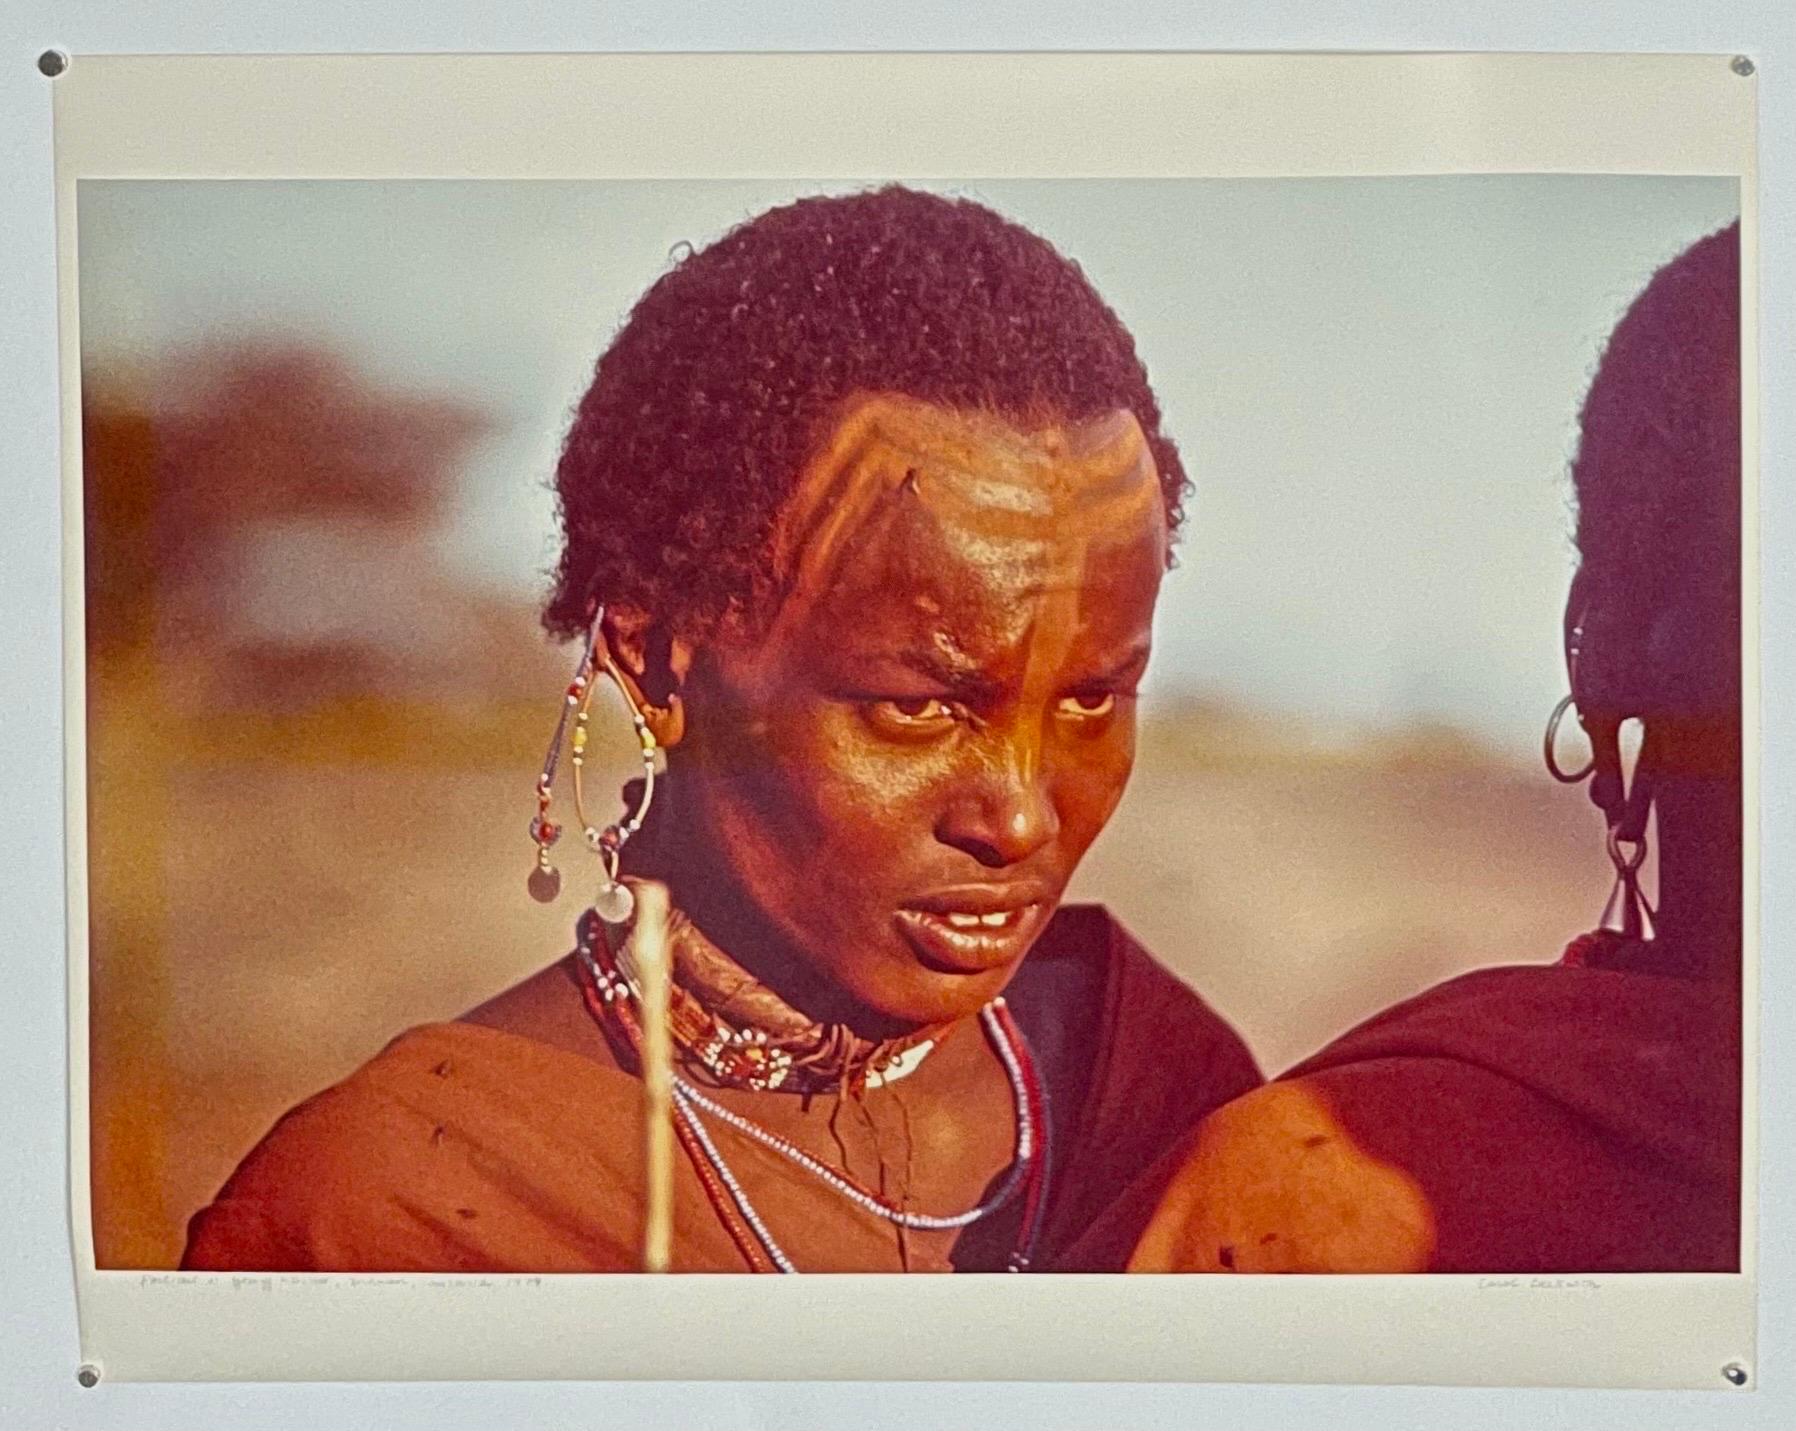 Seltene Vintage-Farb-C-Druck-Fotografie, afrikanischer Maasai-Krieger, Chromogenes Foto  (Rot), Portrait Photograph, von Carol Beckwith